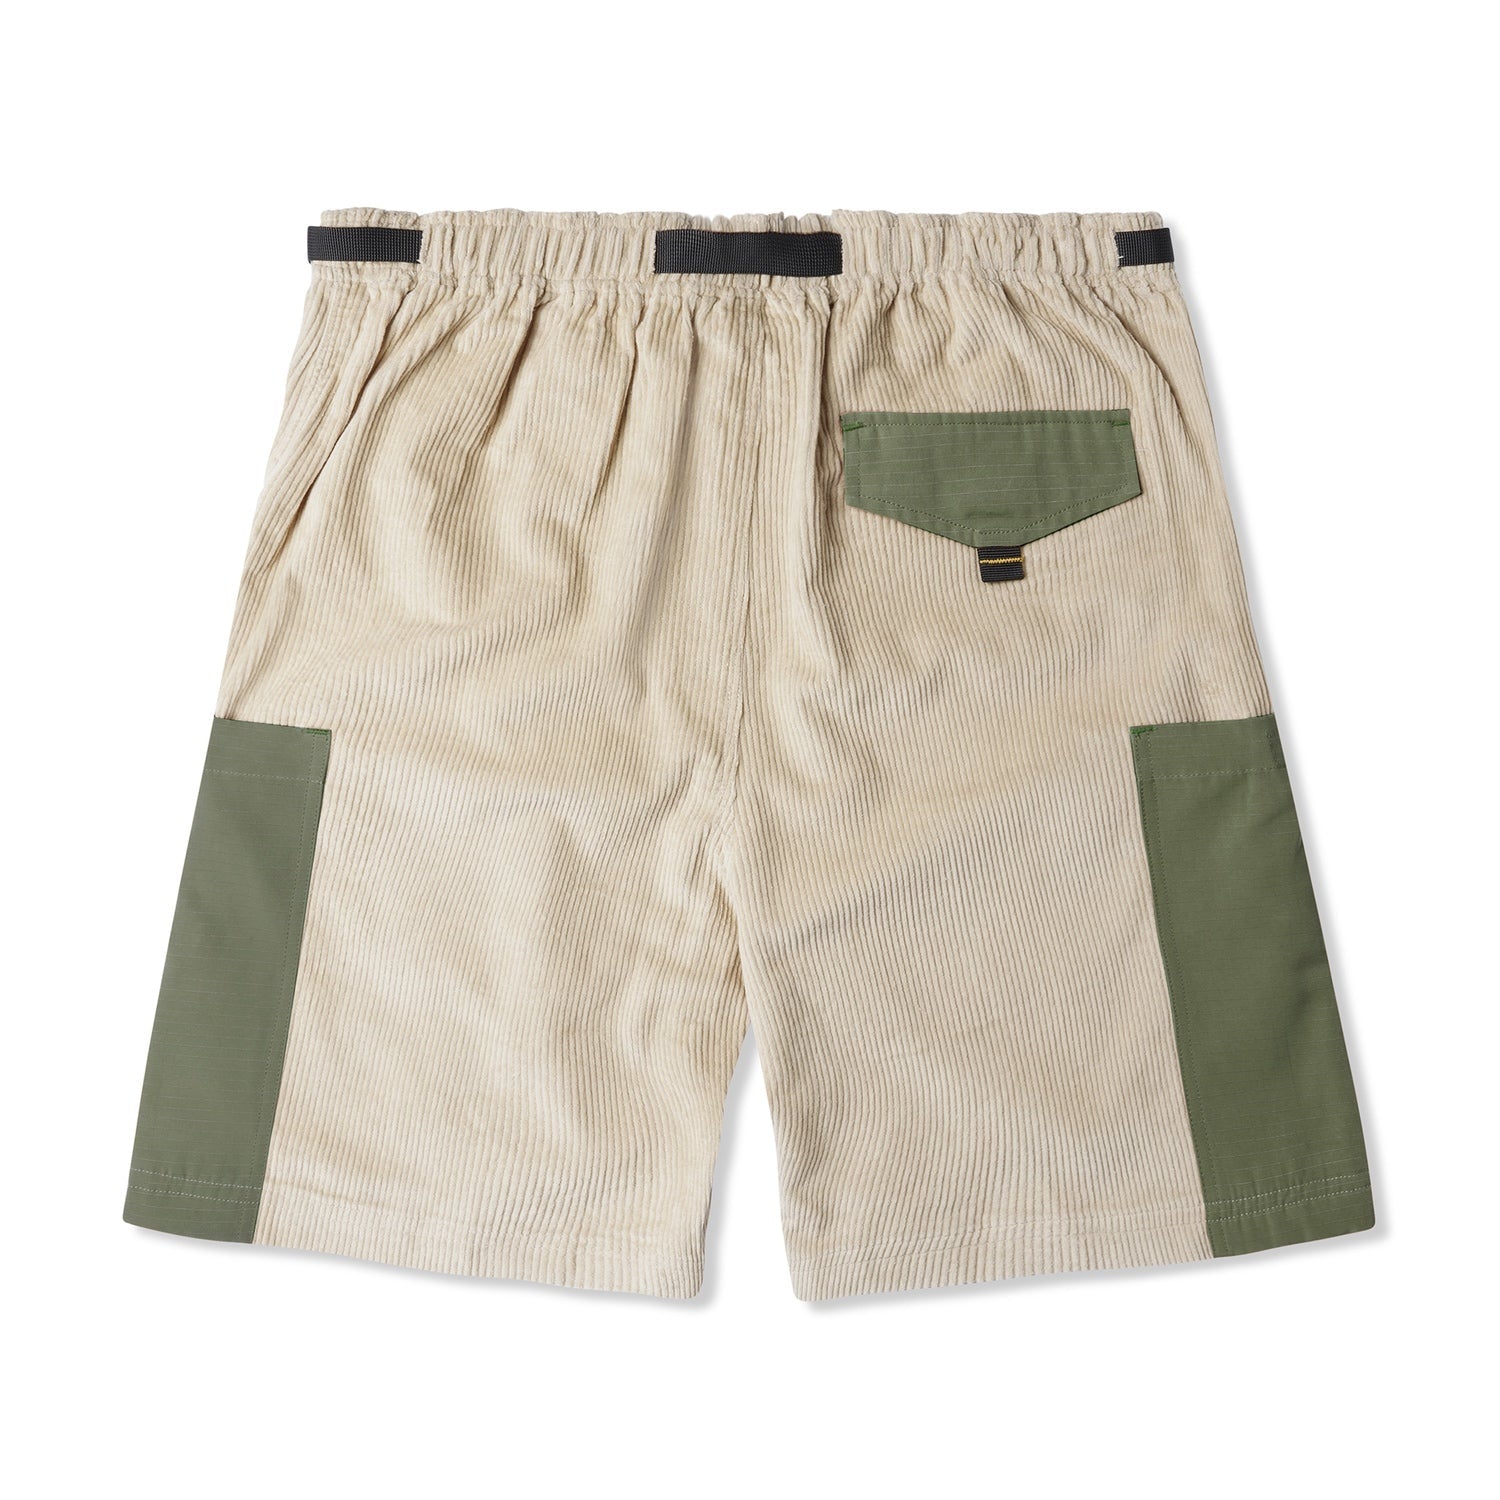 Terrain Corduroy Shorts, Khaki / Sage